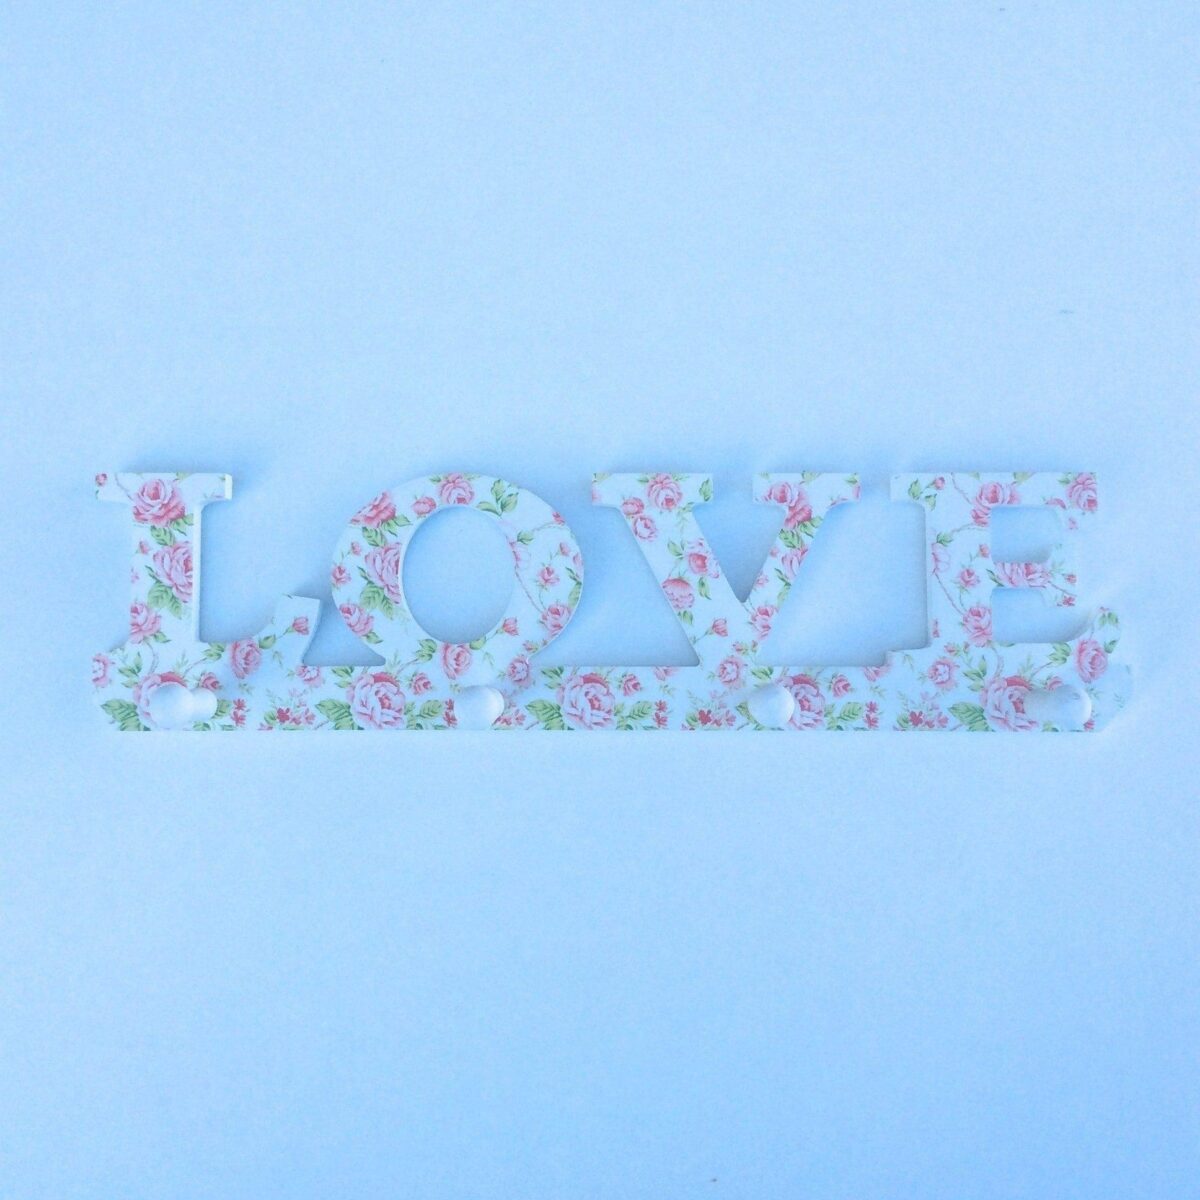 Image 1001 Patère Patere LOVE en LIBERTY rose et vert 4 crochets en bois dans le site N°1 de patère et porte-manteaux de france